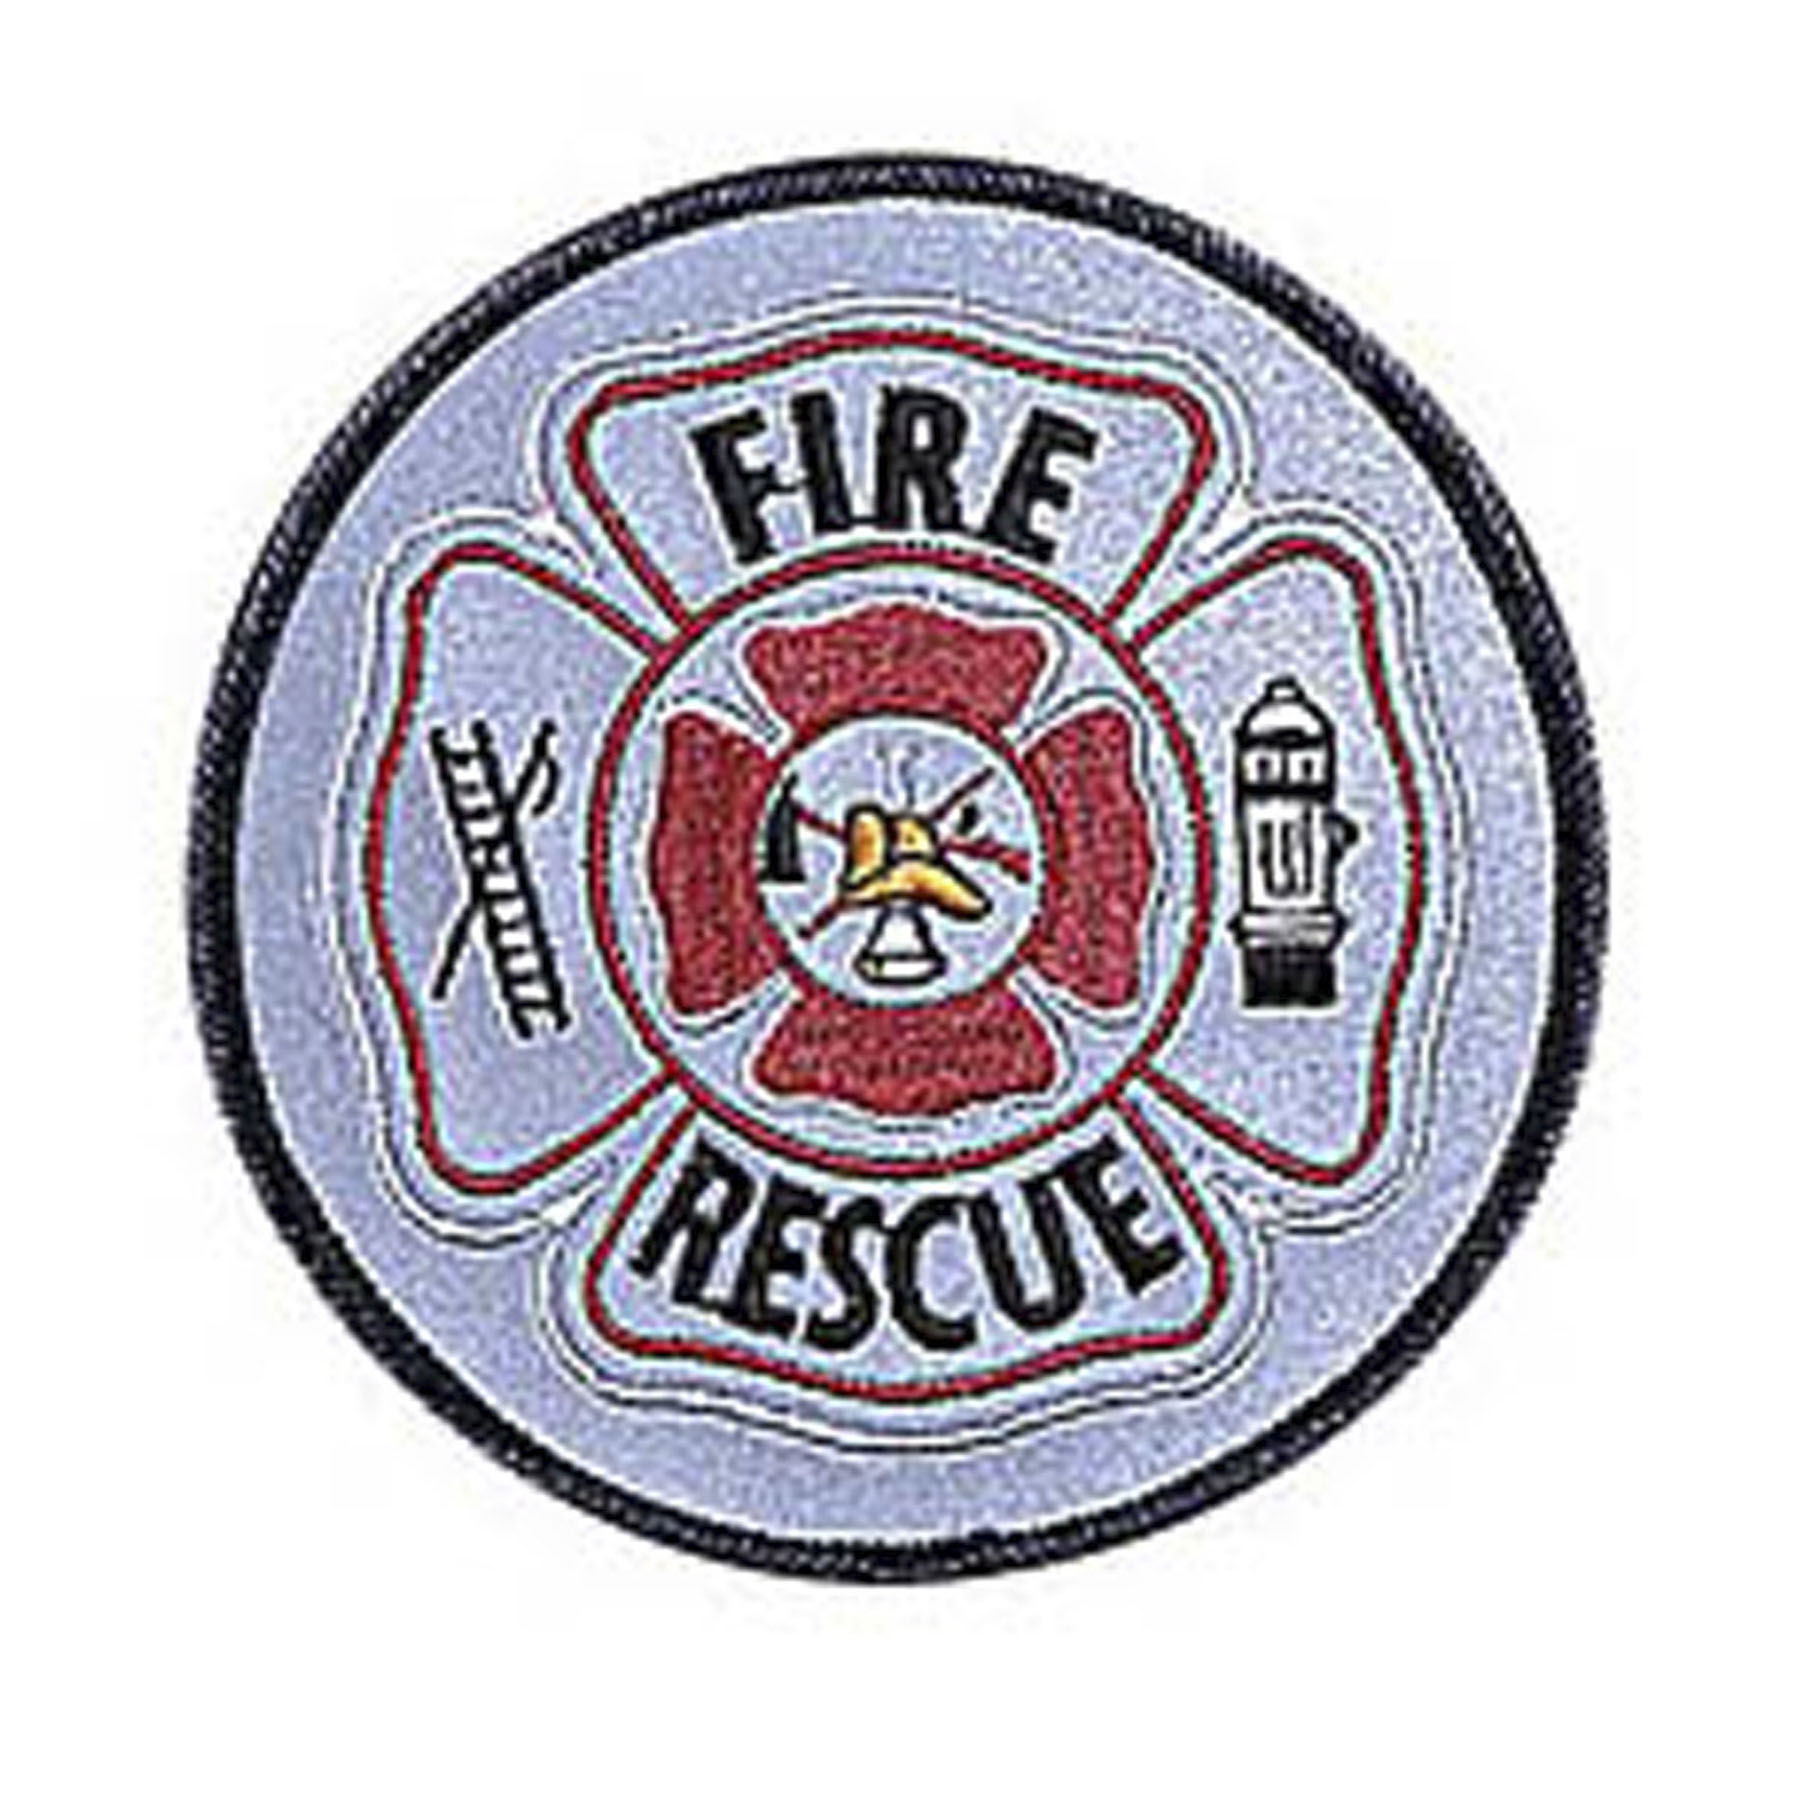 Penn Emblem Fire Rescue Reflective Emblem